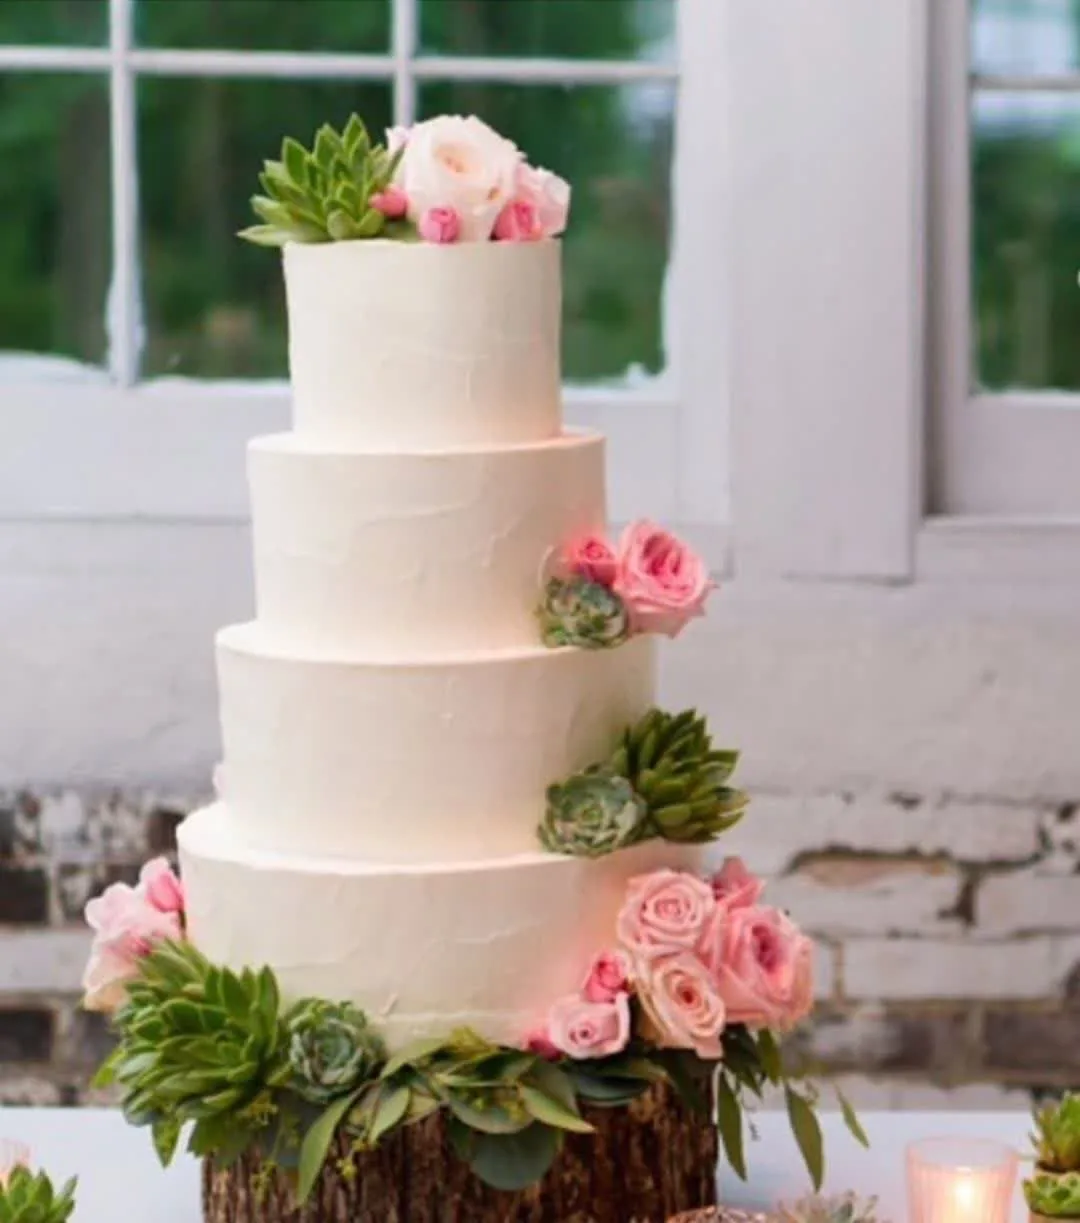 60 مدل کیک عروسی زیبا و متنوع | گالری کیک عروسی آفوربیا